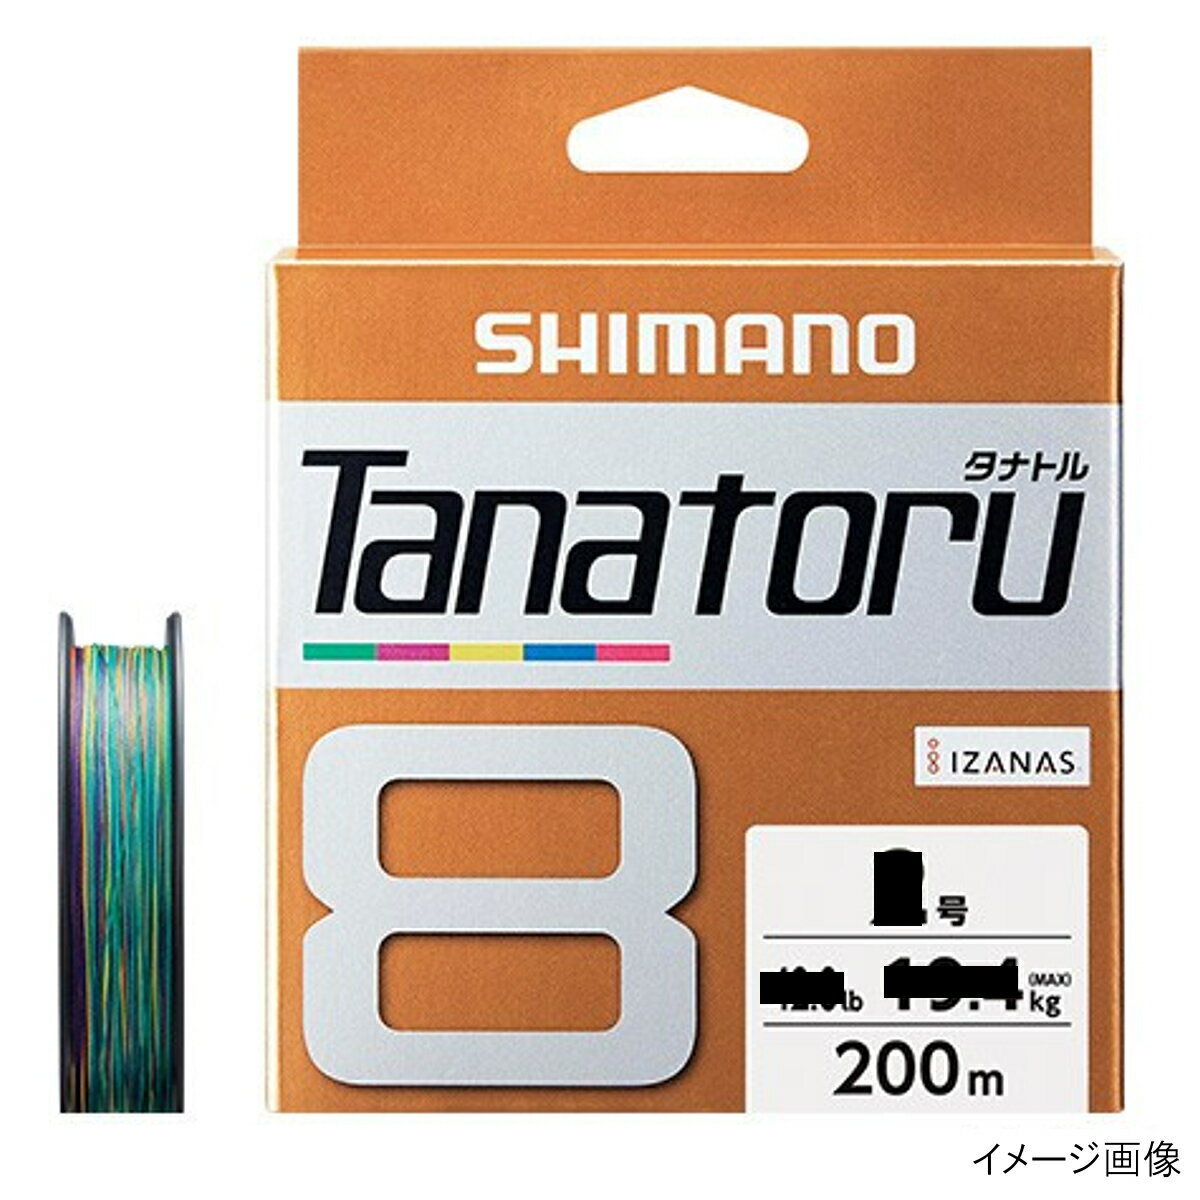 シマノ タナトル8 PLF68R 200m 1.5号